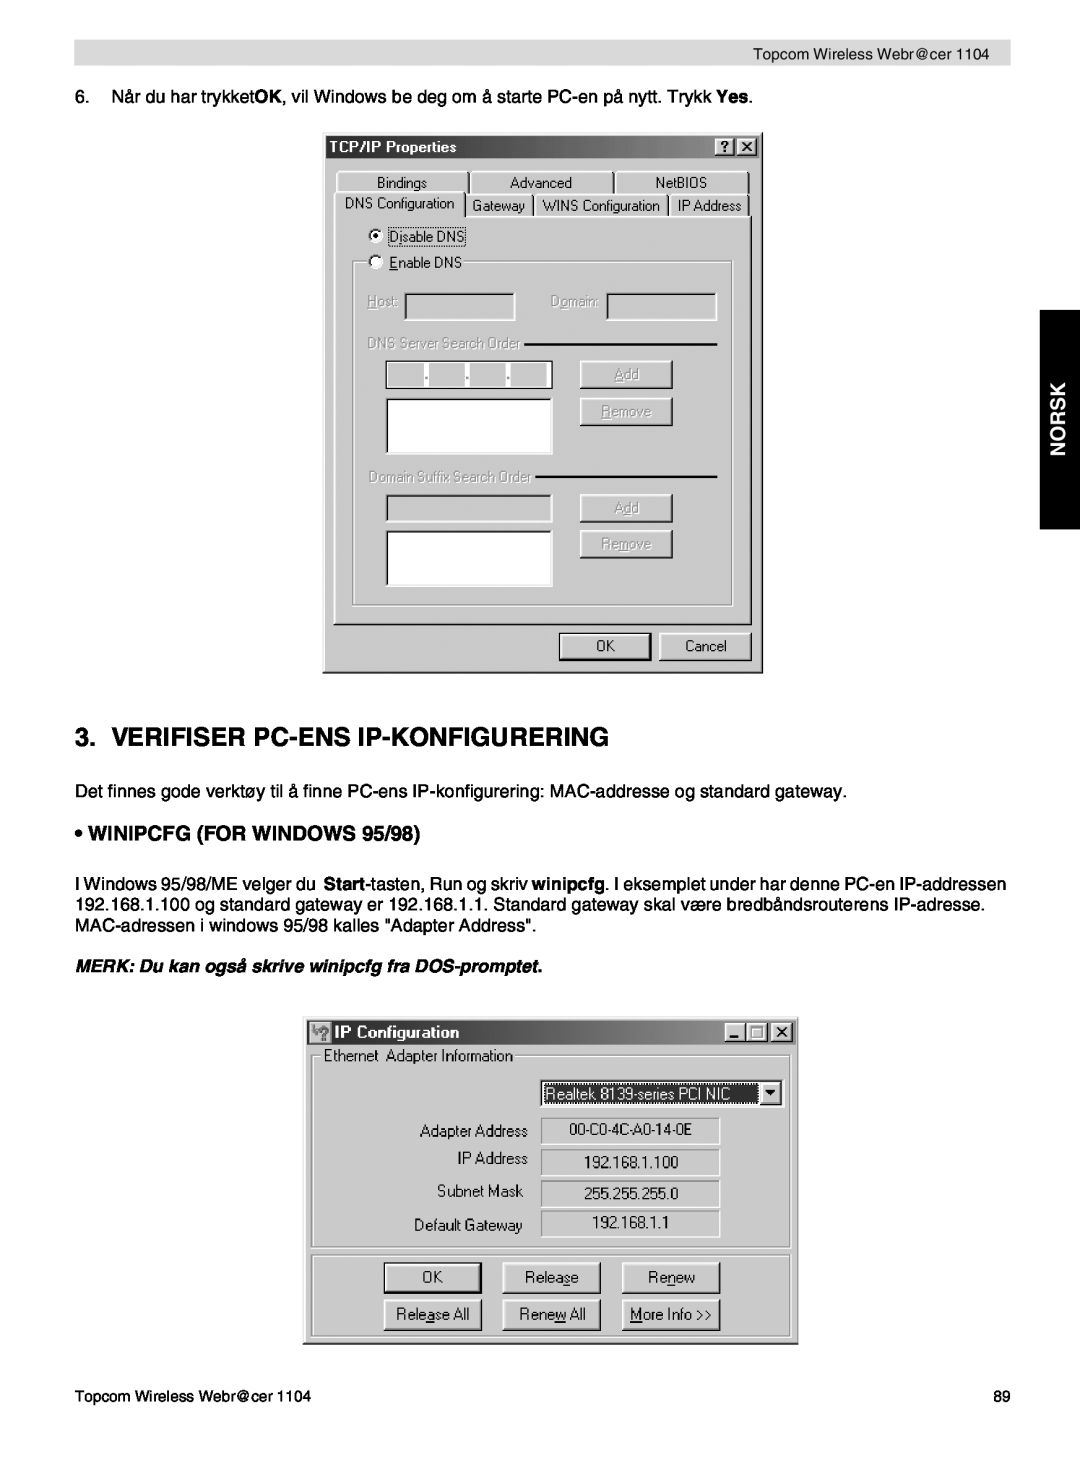 Topcom 1104 Verifiser Pc-Ens Ip-Konfigurering, Norsk, MERK Du kan også skrive winipcfg fra DOS-promptet 